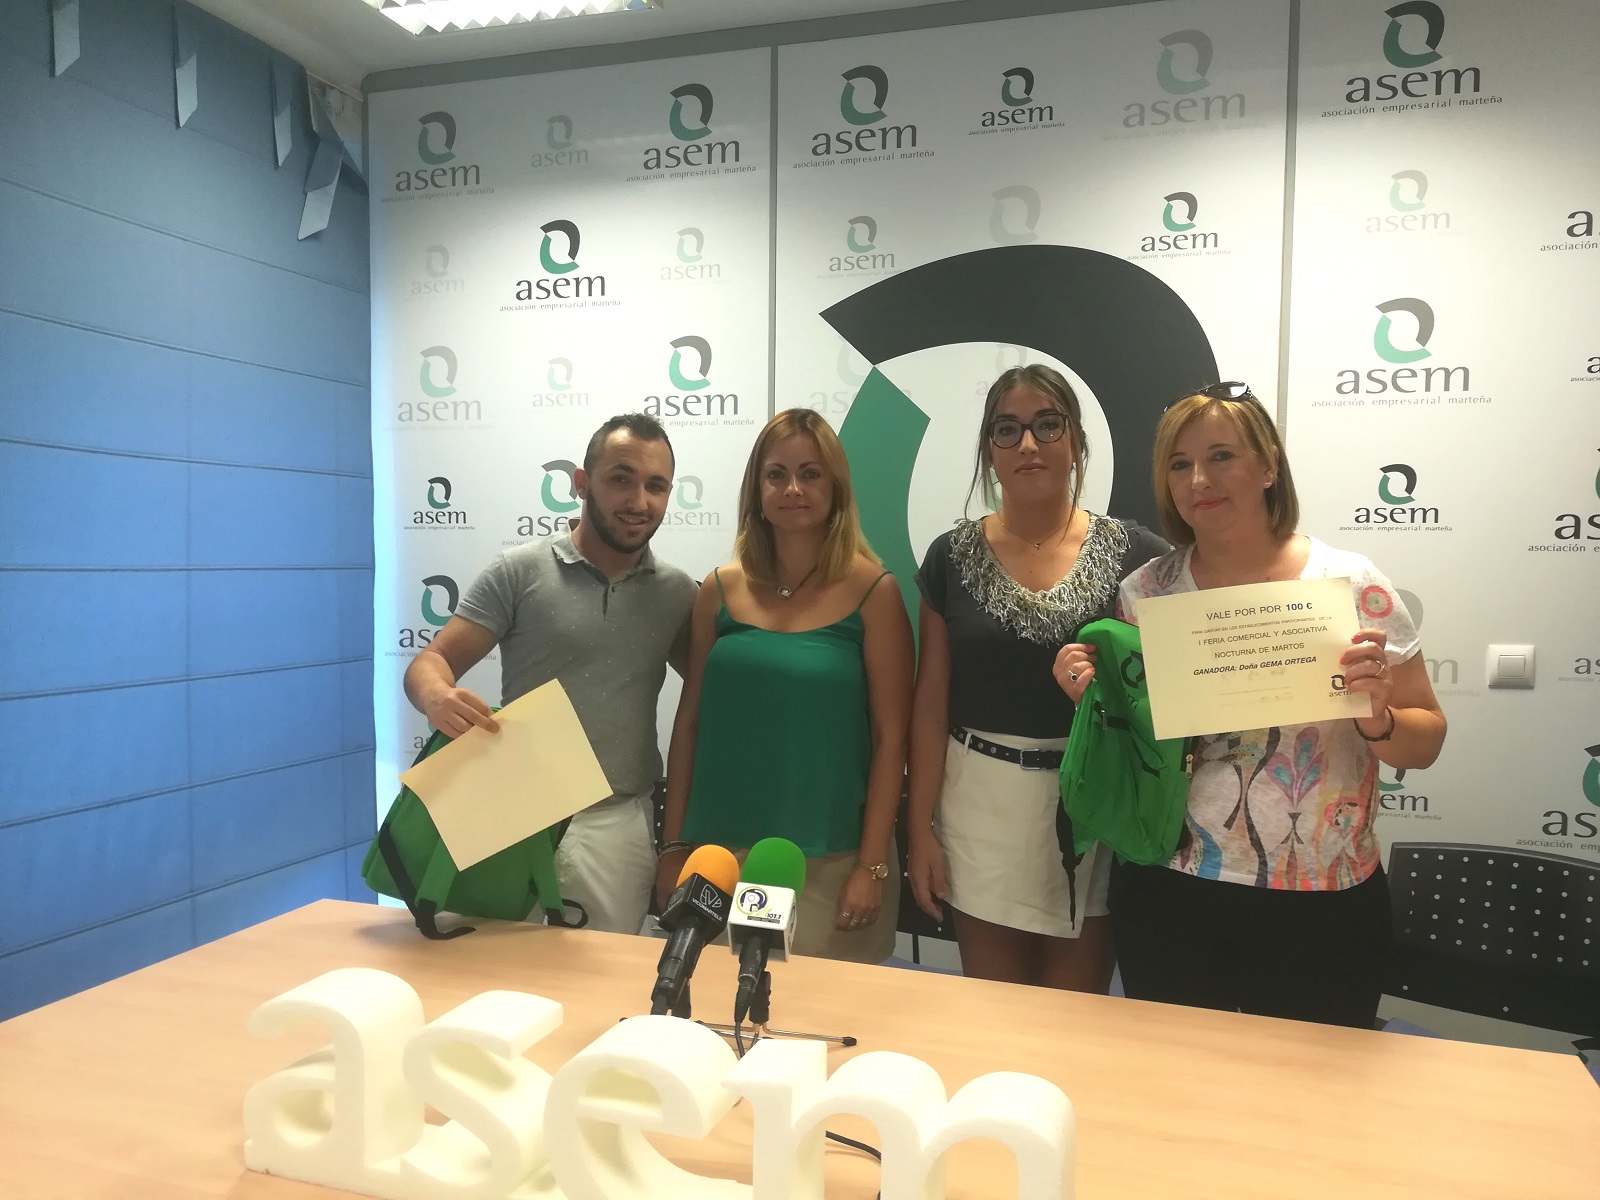 Alicia Galiana y Gema Ortega, ganadoras de los dos cheques de 100 € sorteados por ASEM